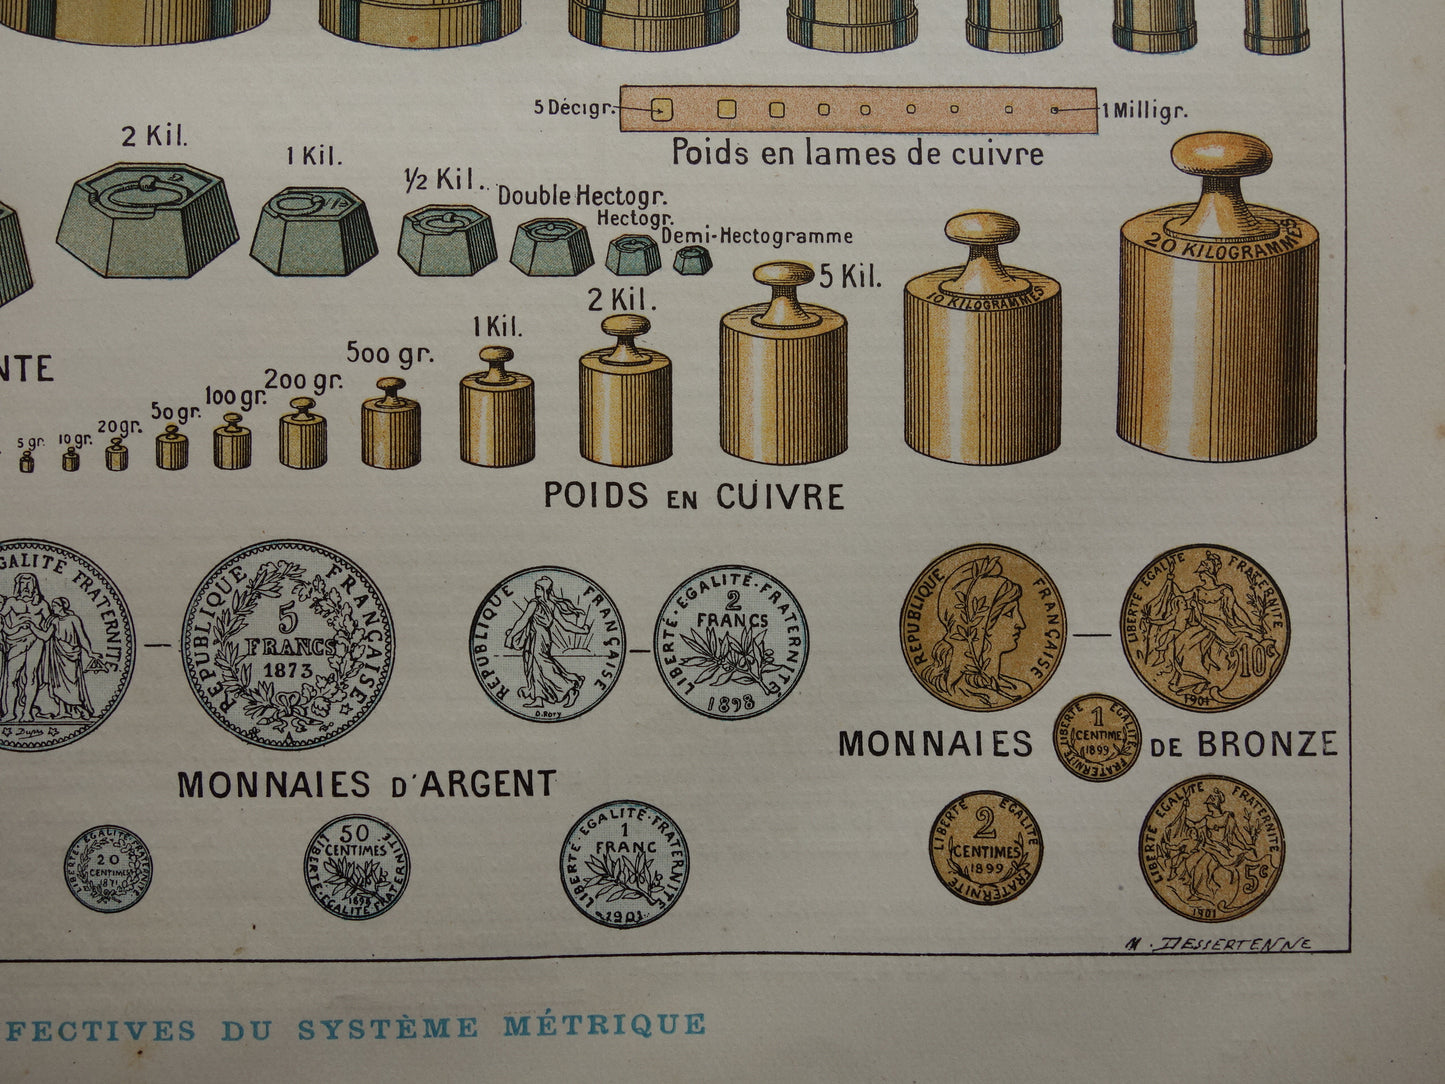 Metriek Stelsel vintage illustratie - originele antieke prent Kilo Meter Metrisch systeem - Wetenschap oude print